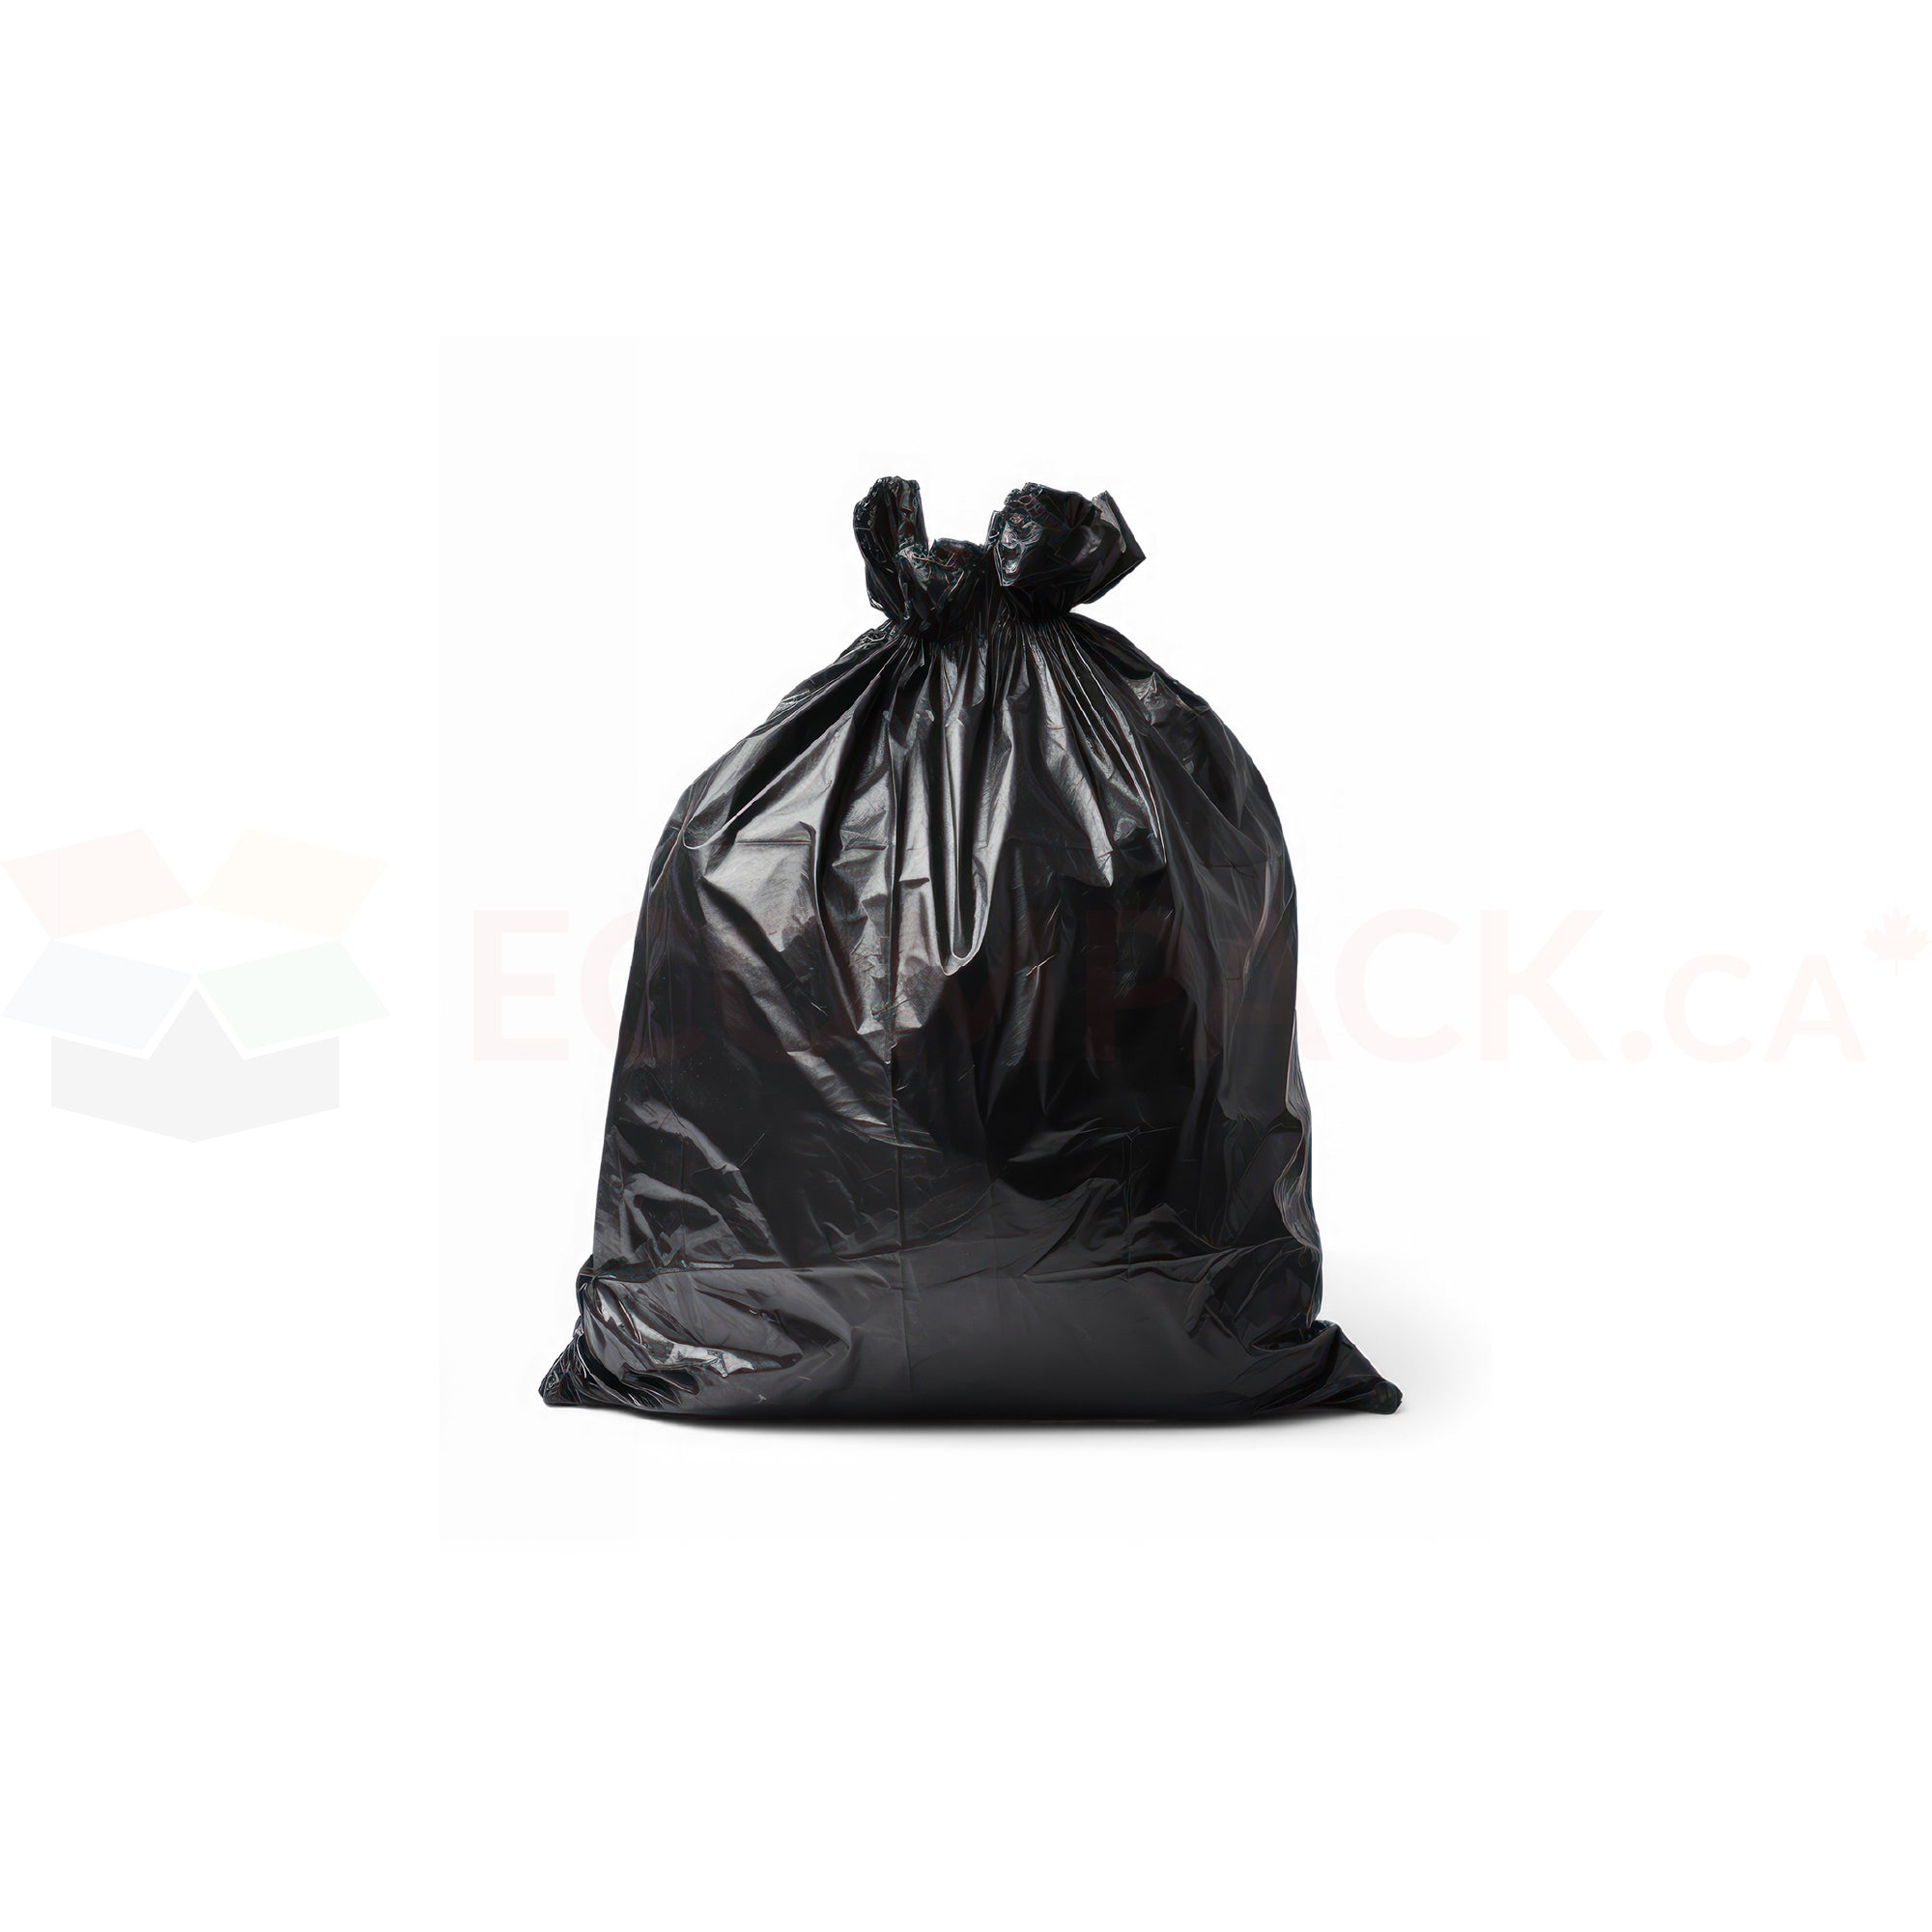 Black Garbage Bags / Black Trash Bags / Black Bin Bags